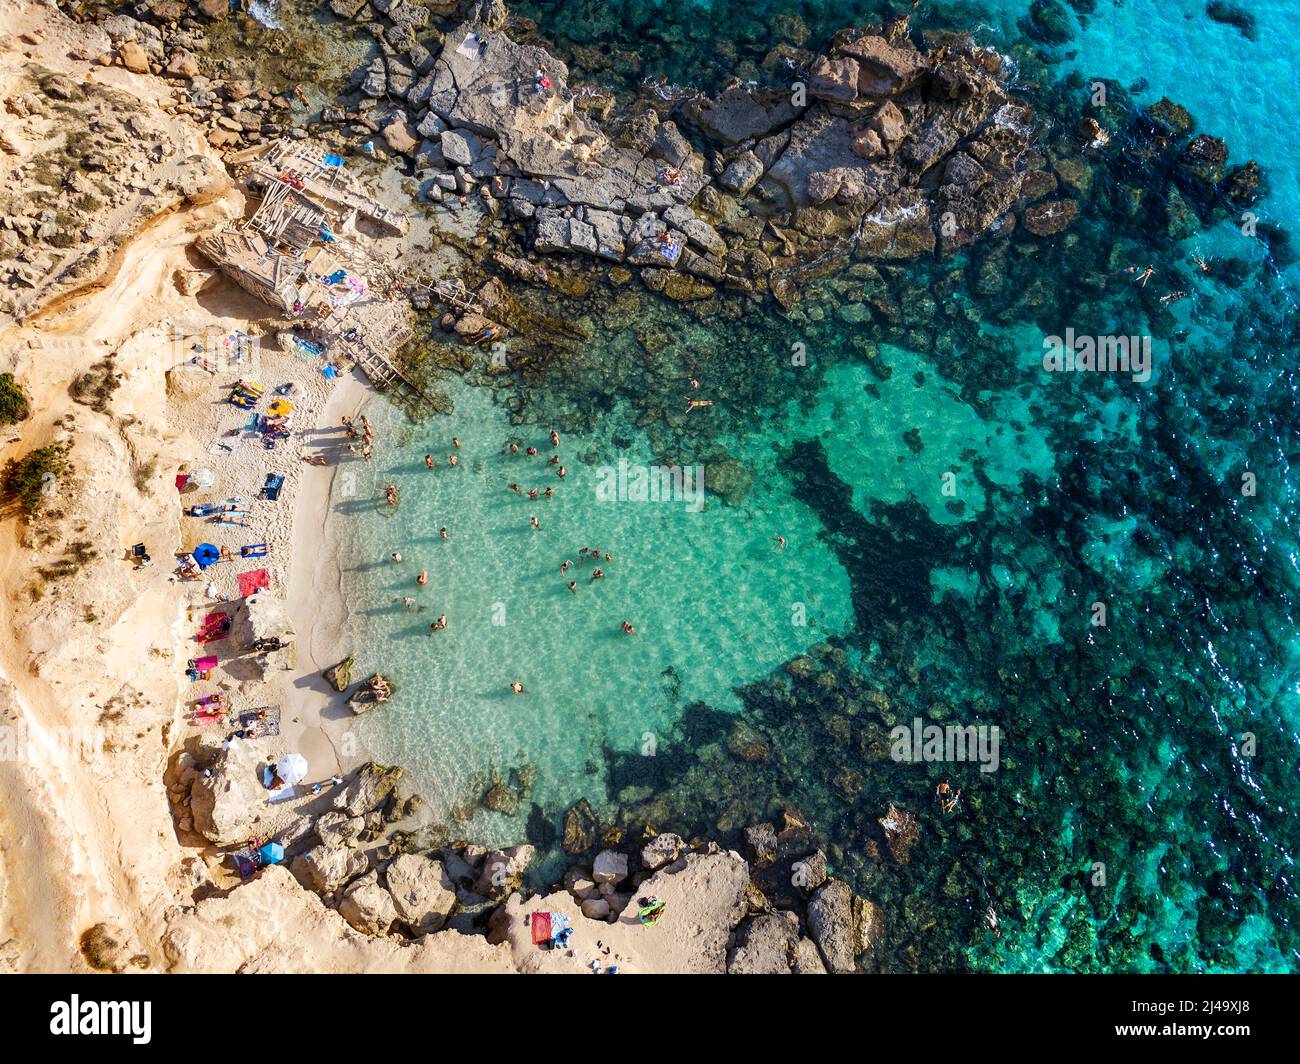 Playa de Es Caló d'es mort cala, vista aérea, visitantes veraniegos tumbados en una cala bordeada de acantilados rojos y rocas en un hueco de aguas turquesas, Formentera Ba Foto de stock